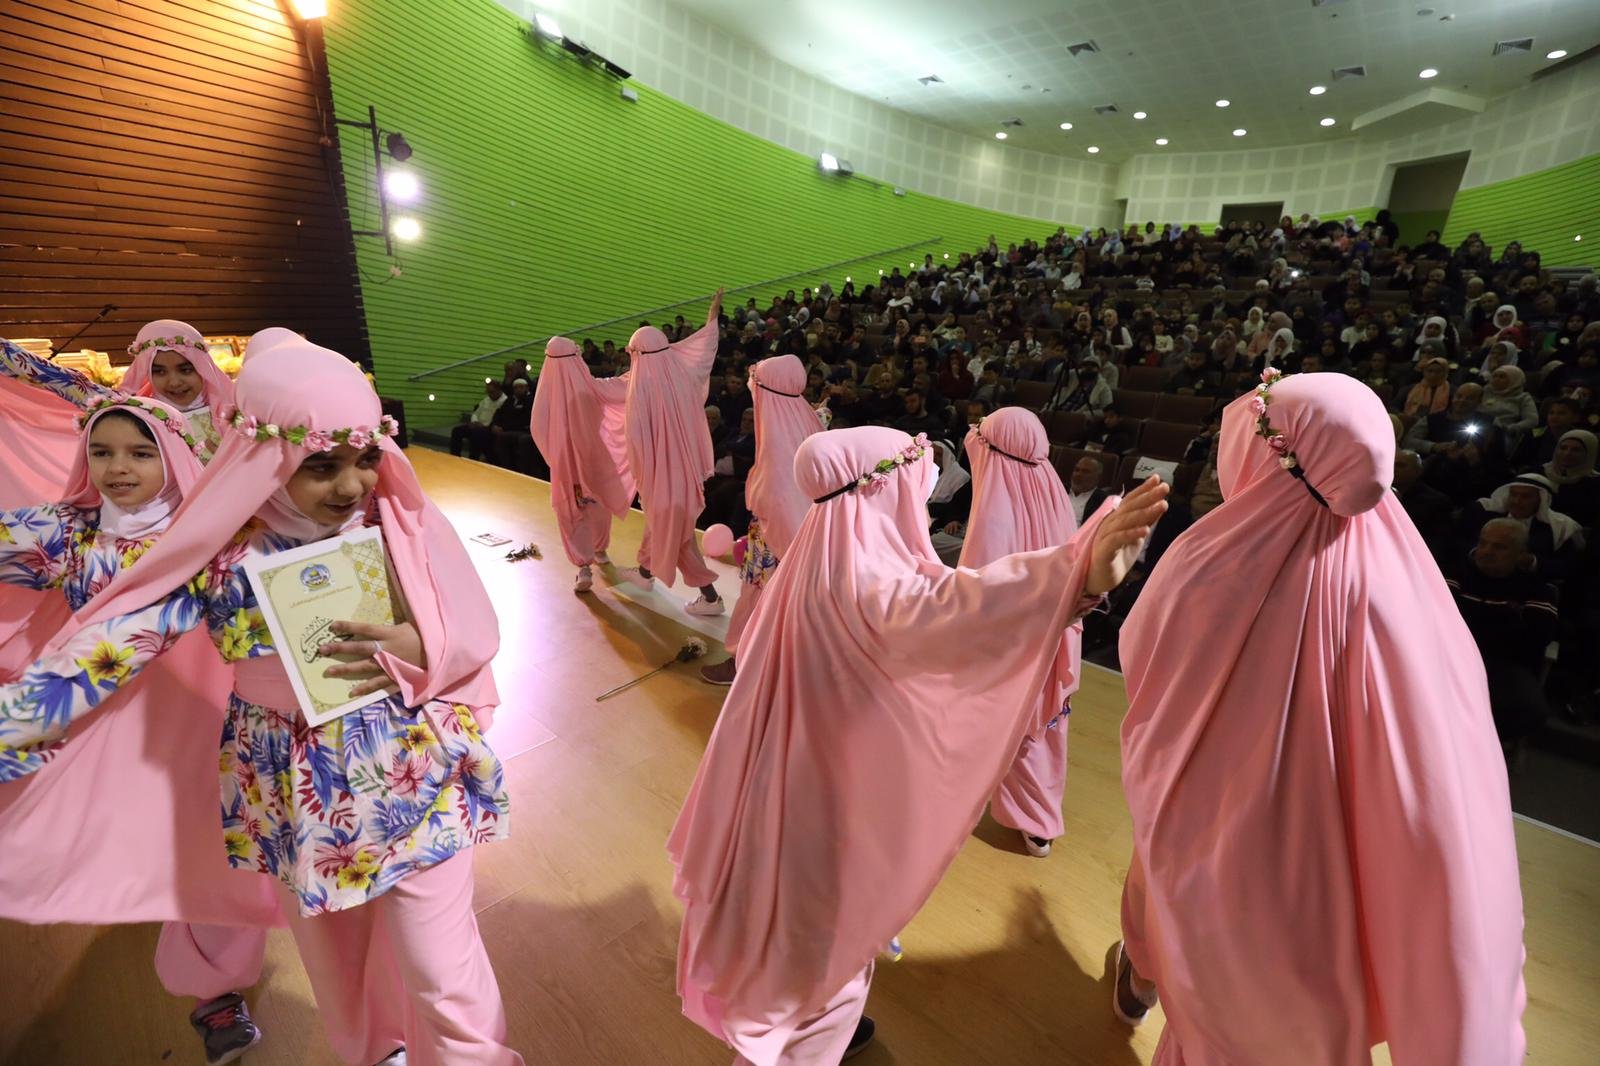 مؤسسة الفرقان لتحفيظ القرآن تكرم المتسابقين في مسابقة "رواد الفرقان" القطرية -2